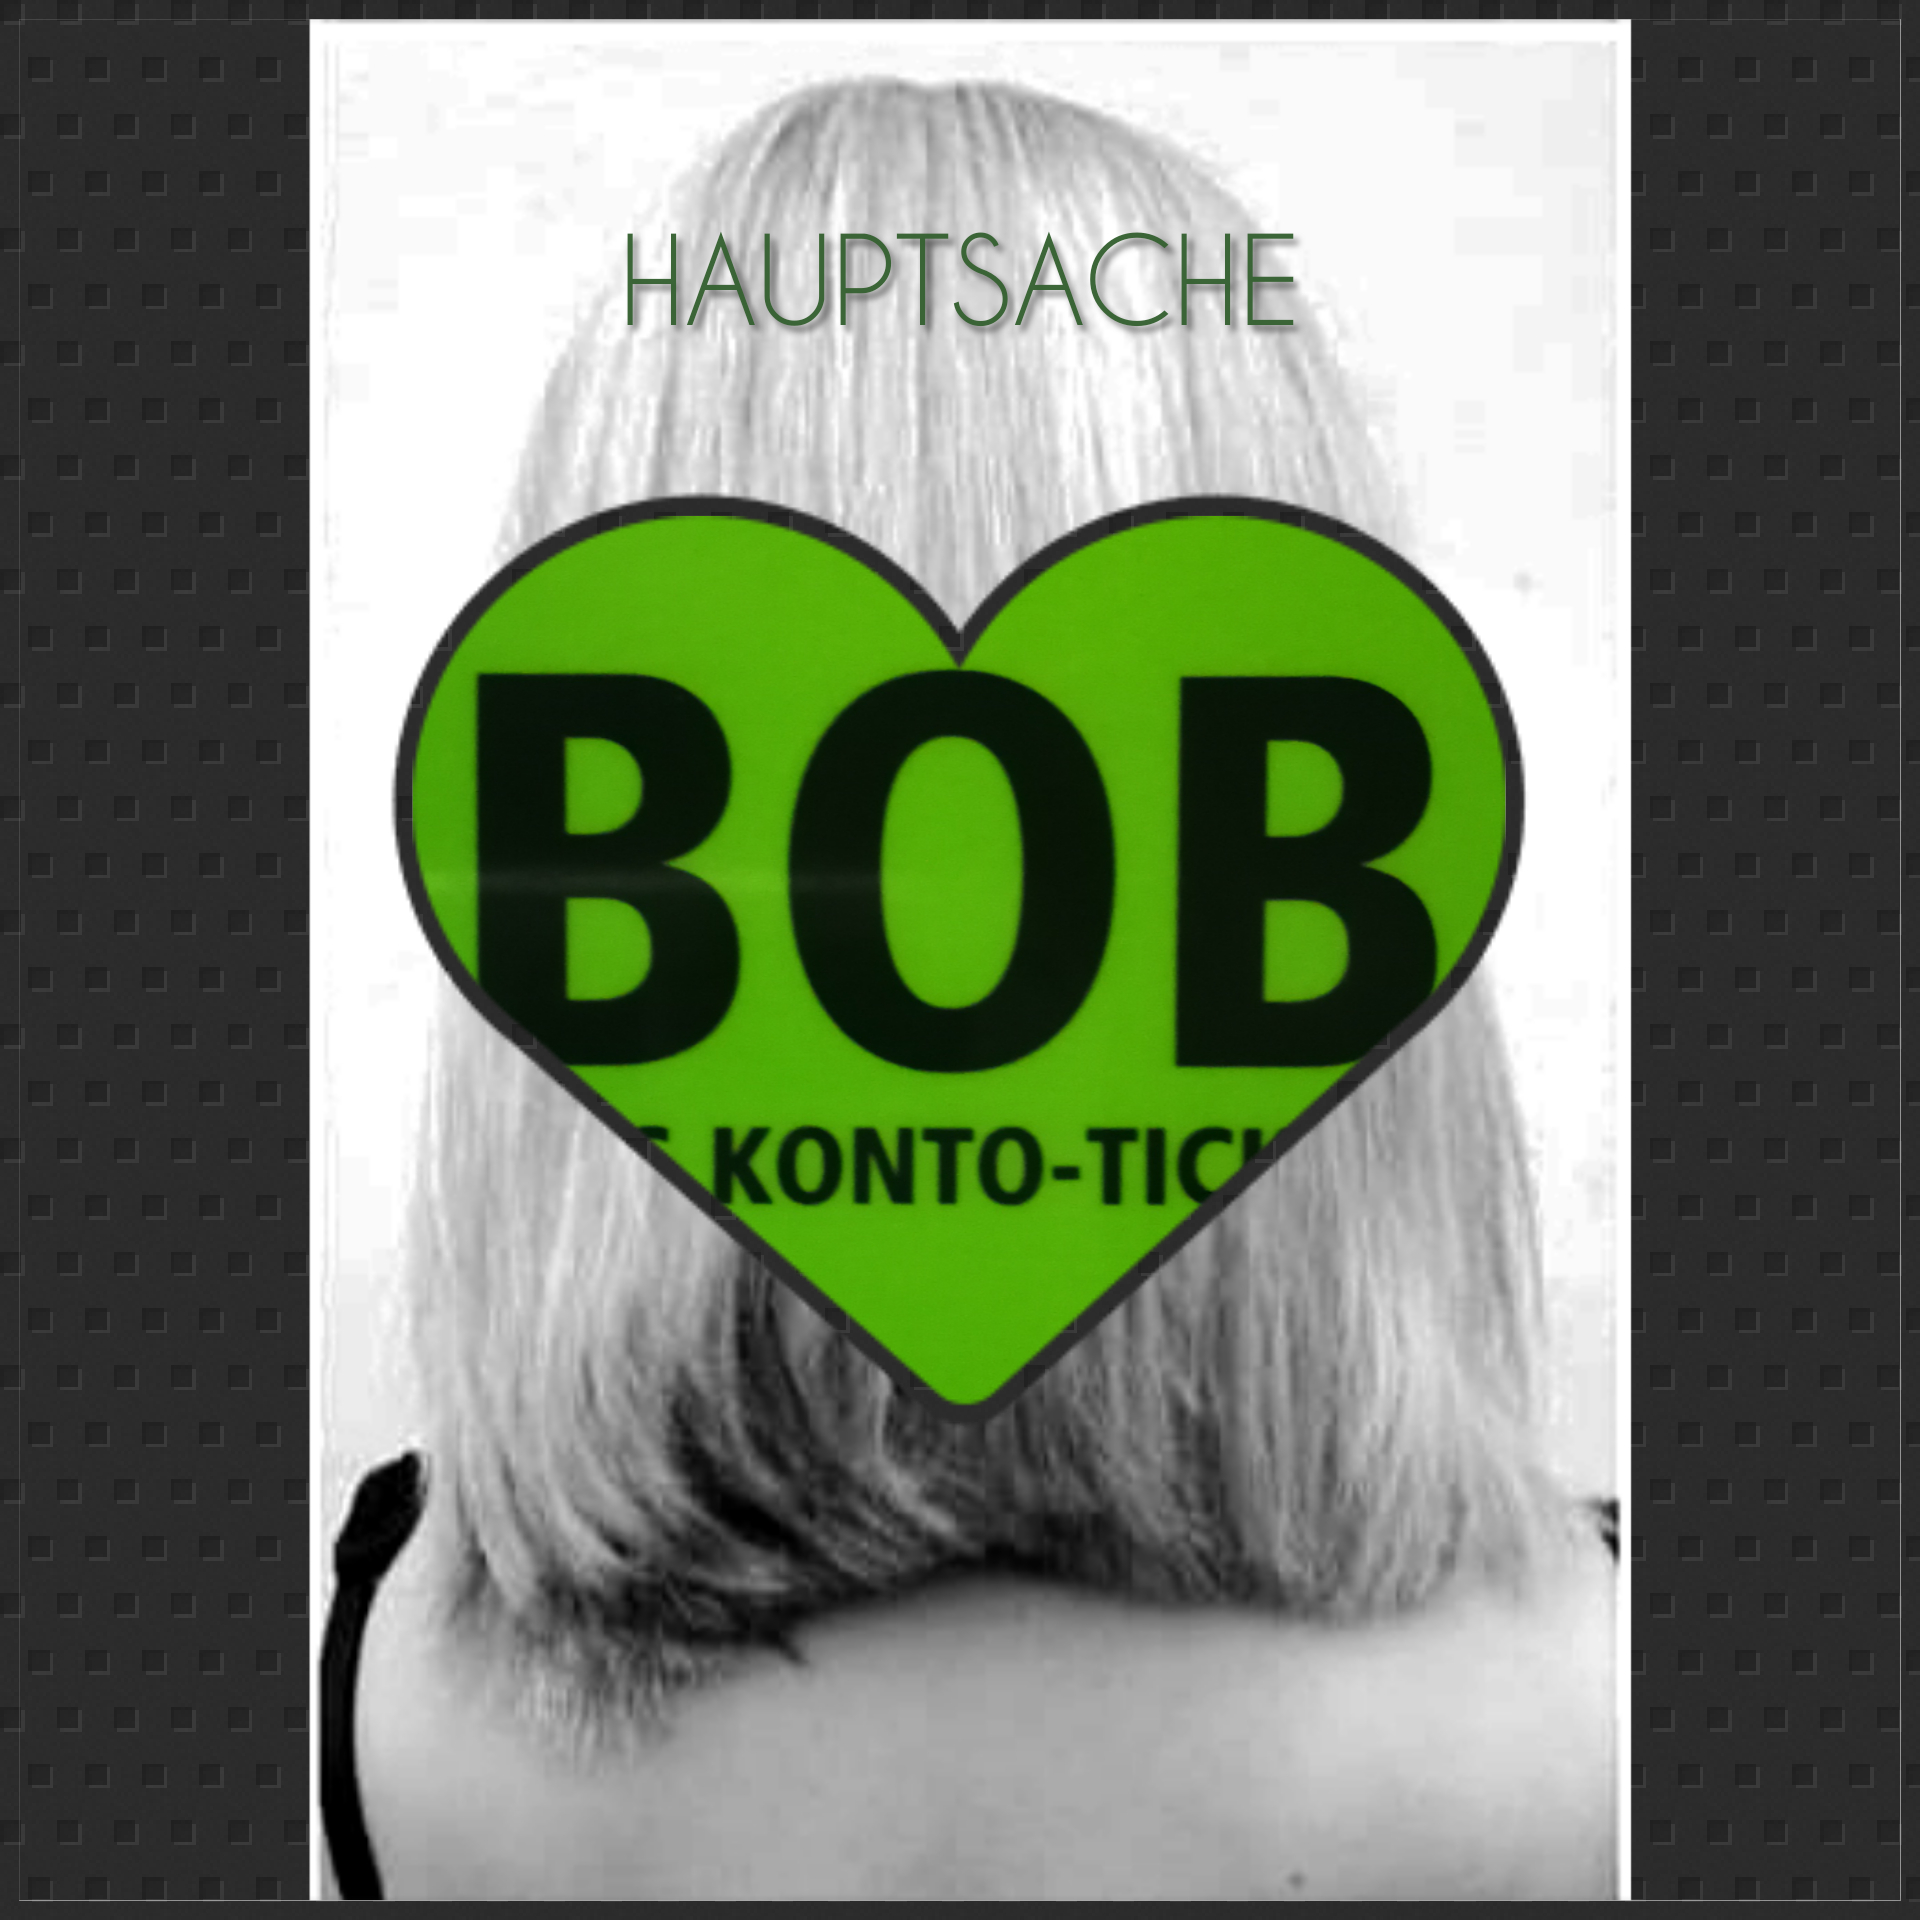 Ein schwarz-weiß-Foto mit dem Hinterkopf einer Frau mit hellen schulterlangen Haaren. Über das Foto wurde der Begriff "HAUPTSACHE" und darunter ein großes grünes Herz "BOB Konto-Tic" retuschiert. Ein Ausschnitt des BOB-Konto-Tickets der BSAG.